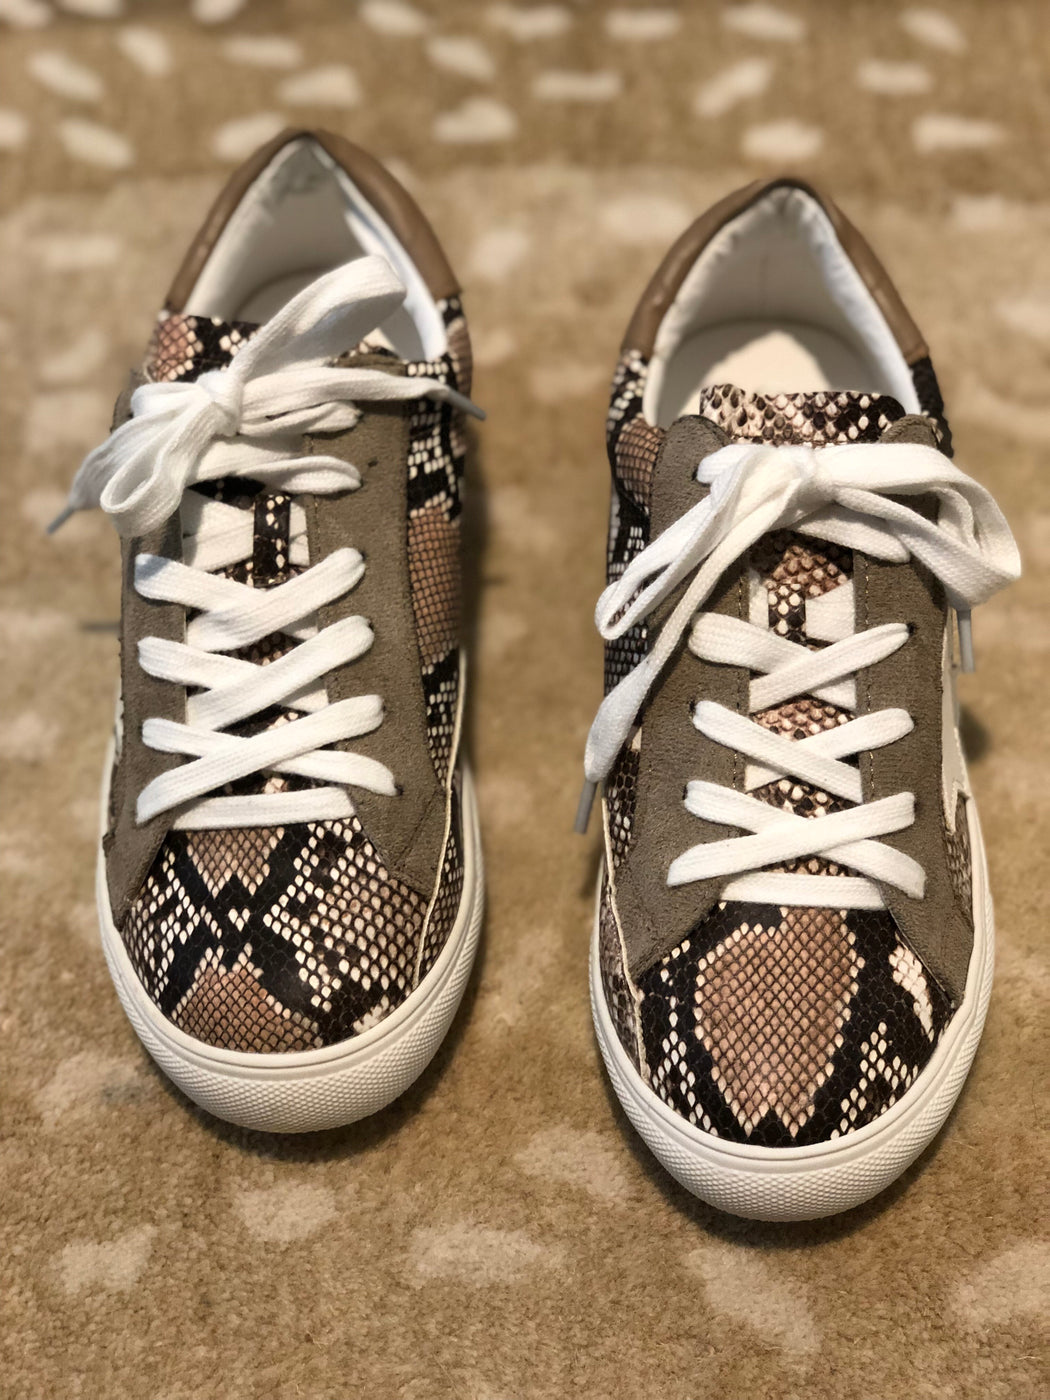 Snakeskin sneakers — Hazel Grace Boutique